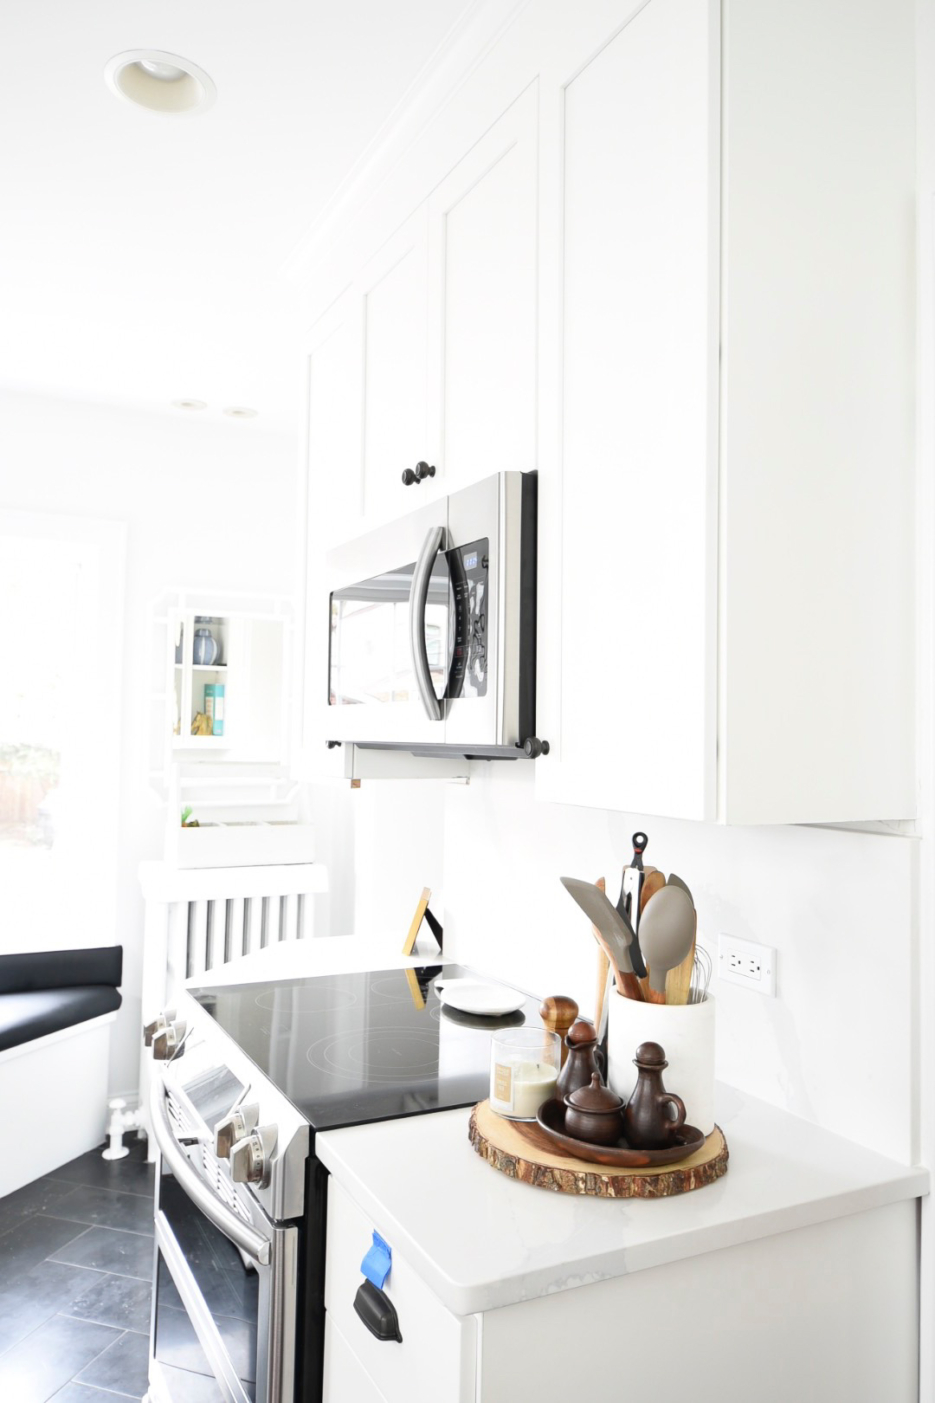 quartz kitchen white kitchen open shelves #design #kitchendesign